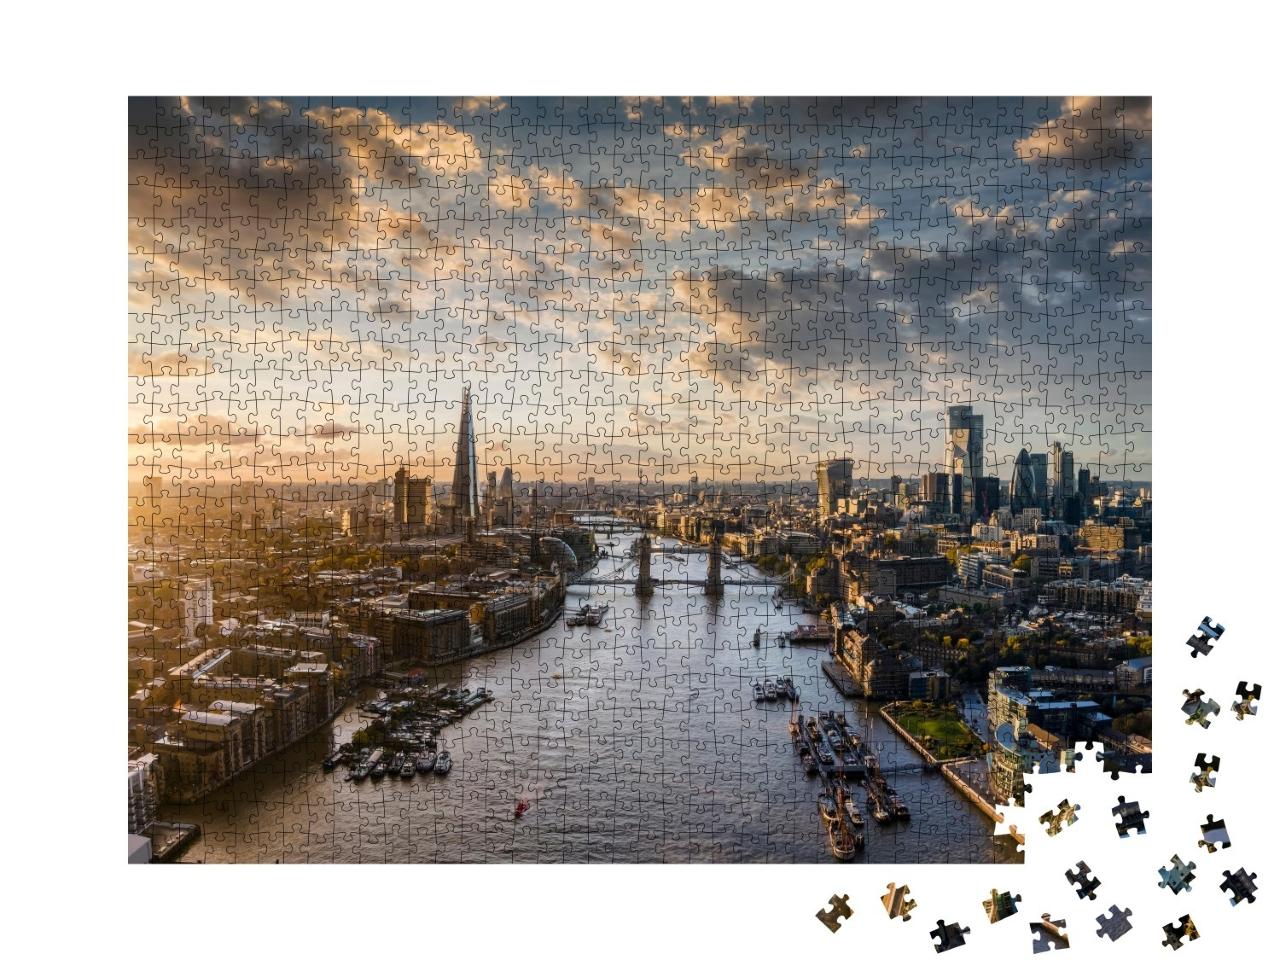 Puzzle de 1000 pièces « Large vue panoramique sur le skyline moderne de Londres, Royaume-Uni »